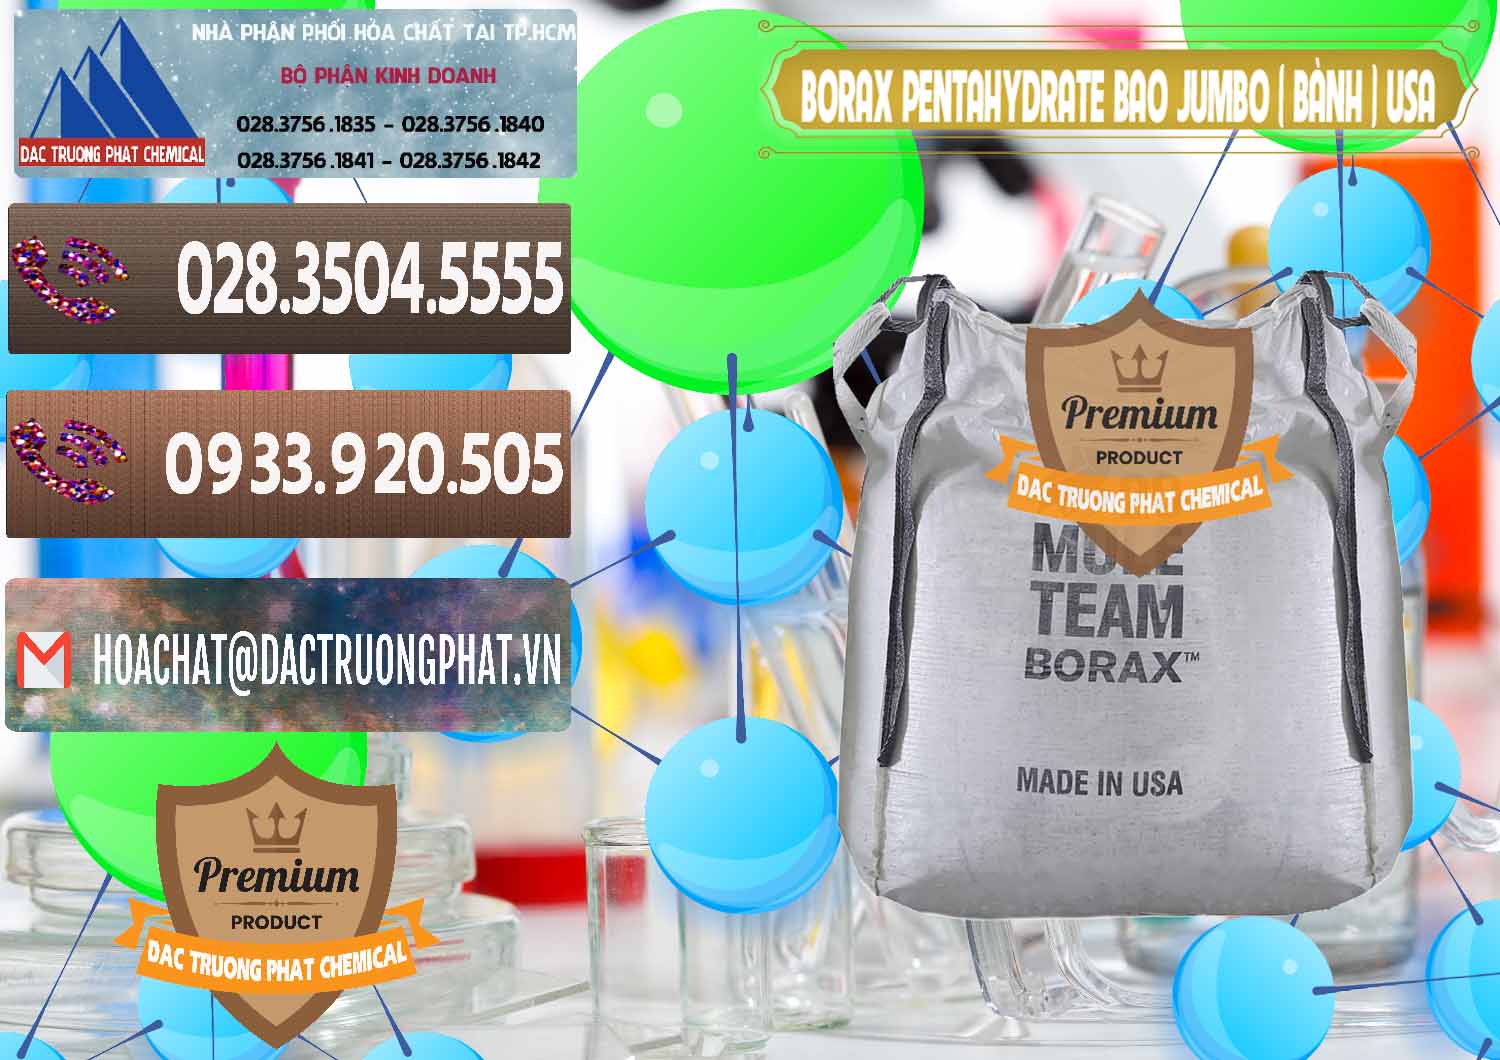 Công ty nhập khẩu & bán Borax Pentahydrate Bao Jumbo ( Bành ) Mule 20 Team Mỹ Usa - 0278 - Cty bán và cung cấp hóa chất tại TP.HCM - hoachatviet.net